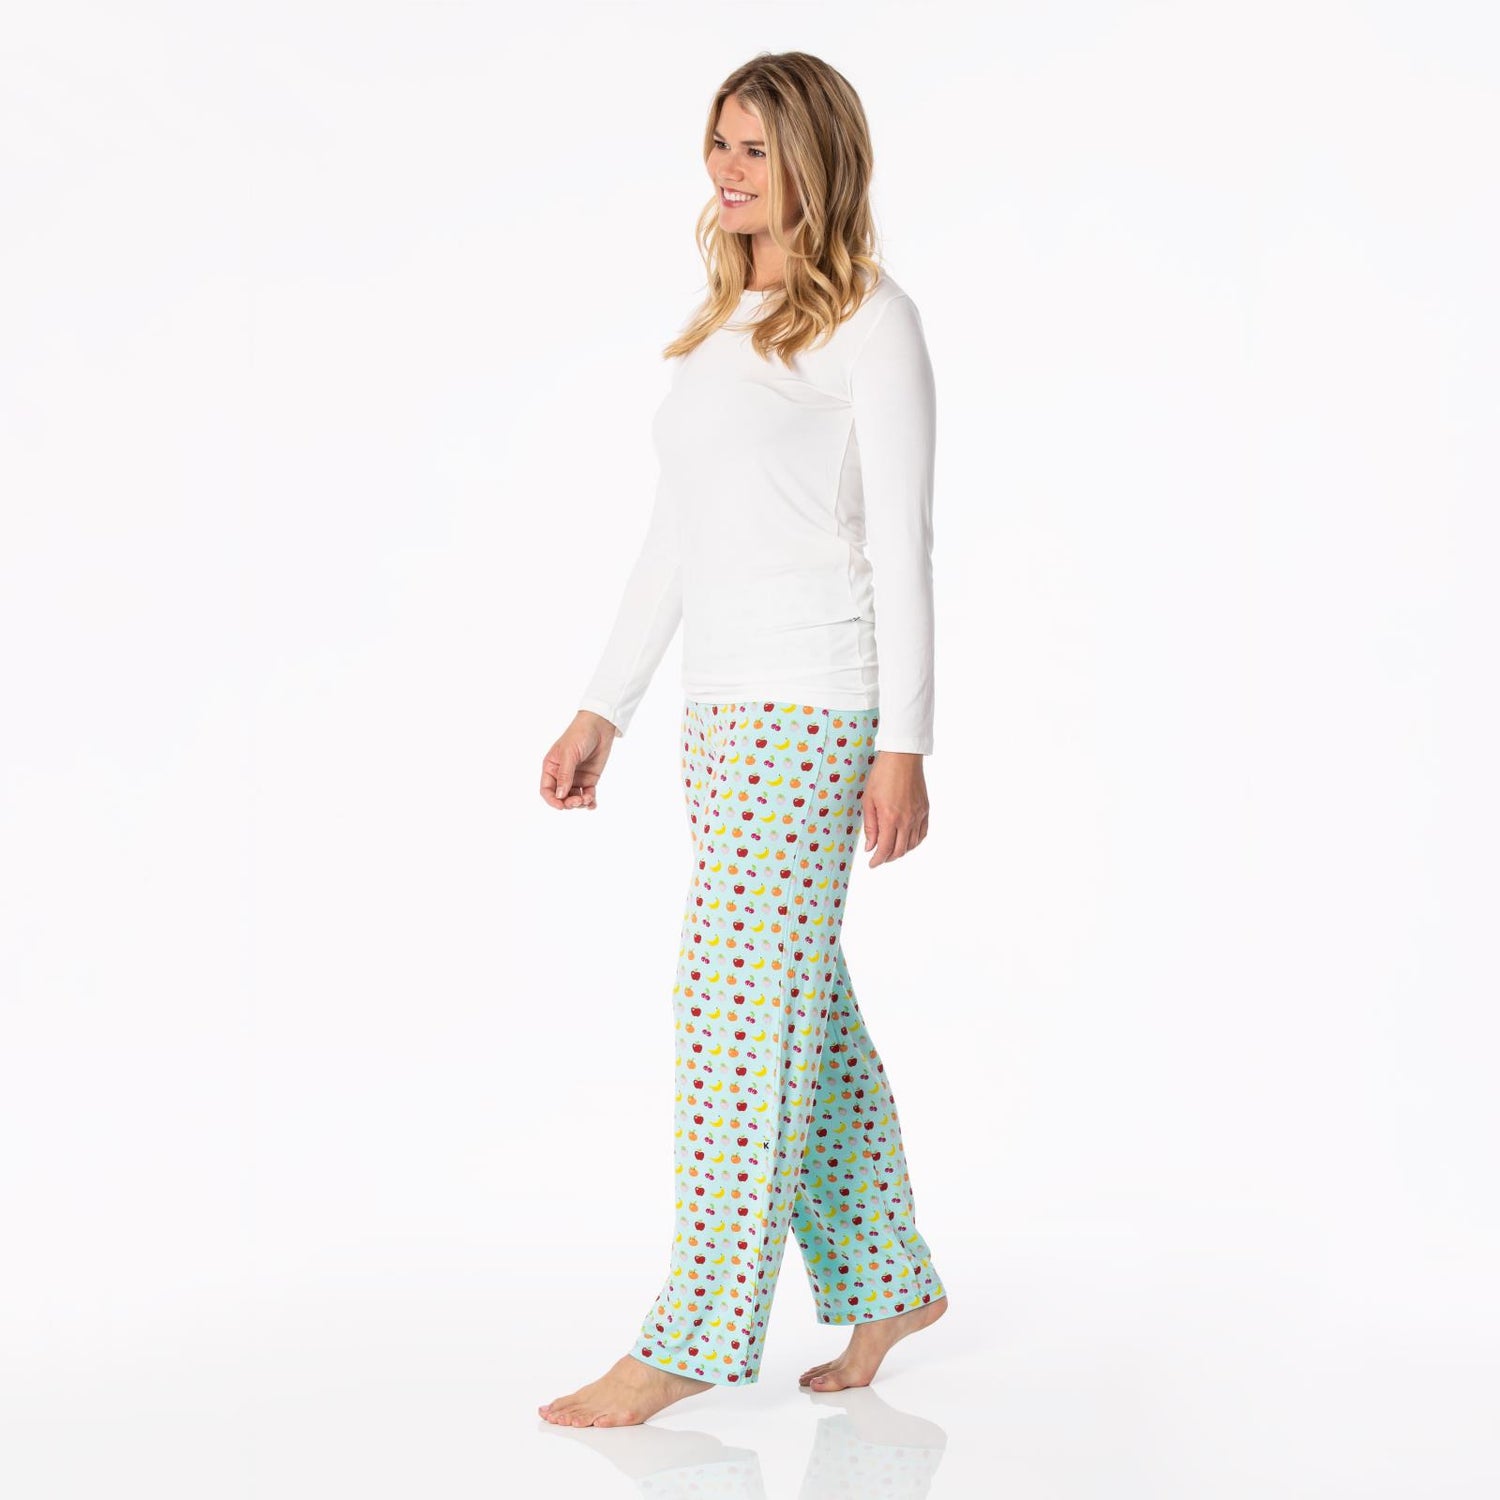 Women's Print Pajama Pants in Summer Sky Mini Fruit